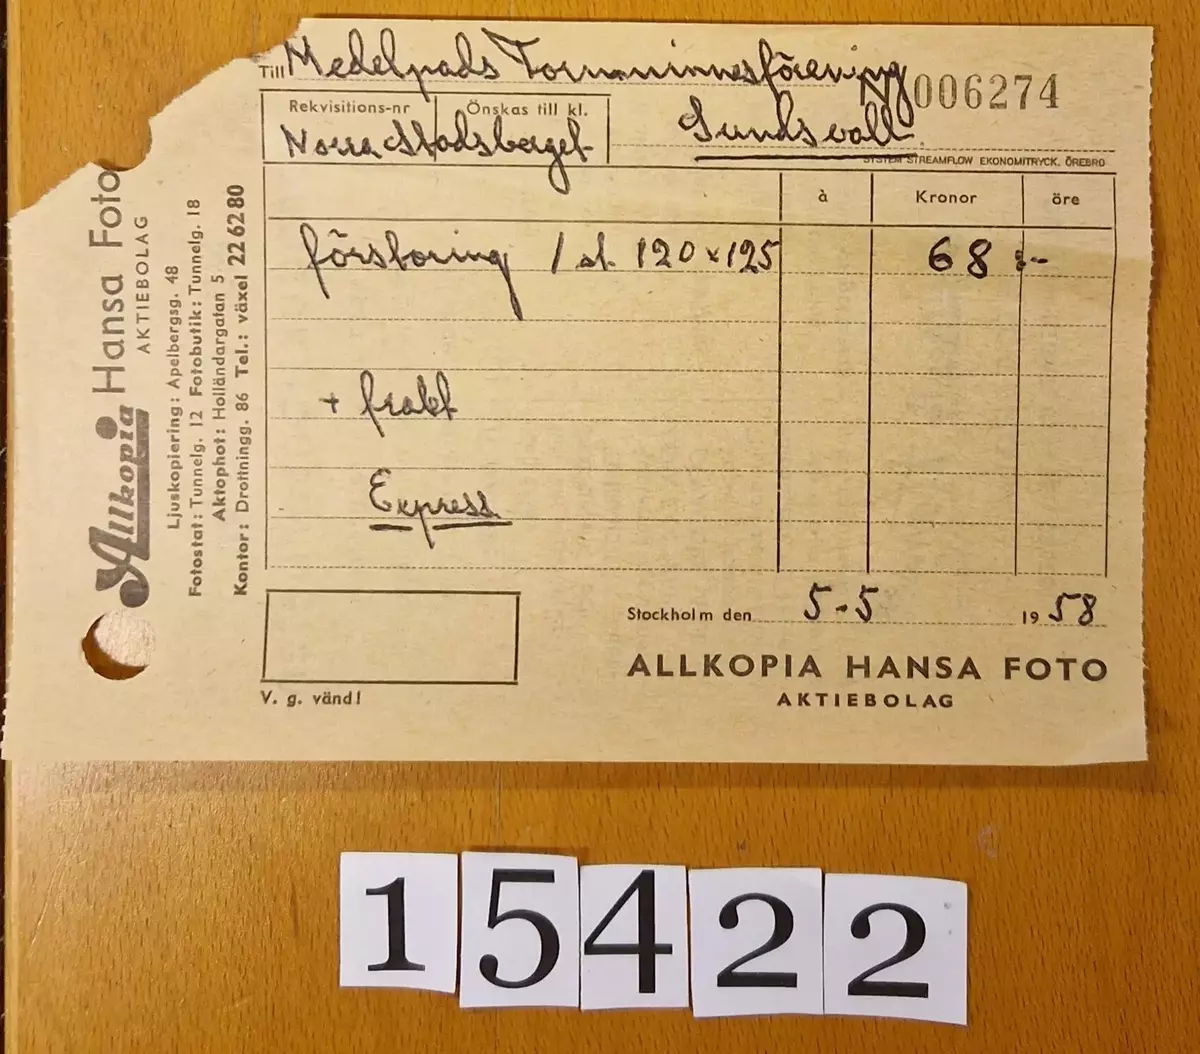 Dokument.

1. Kvitto från Kungsfoto AB, Pi persg 10, Stockholm K. Försändes till Hansa Foto, Holländerg 5. 1 st glasnegativ 9 x 12 (Medelpads 
    fornminnesförening). Daterat Stockholm 3/9 1957.
2. Kvitto från Allkopia Hansa foto Aktiebolag. Till Medelpads Fornminnesförening Norra stadsberget, Sundsvall. Förstoring 1 st 120 x 125,  
    68:- + frakt. Express. Daterat Stockholm 5/5 1958.
3. Foto av fullriggare, 13,5 x 13,8 cm.
4. Negativ 11,8 x 16,3 cm, tillhörande fullriggaren.
Förvaras i kuvert med text " Foto och negativ av fullriggare".
